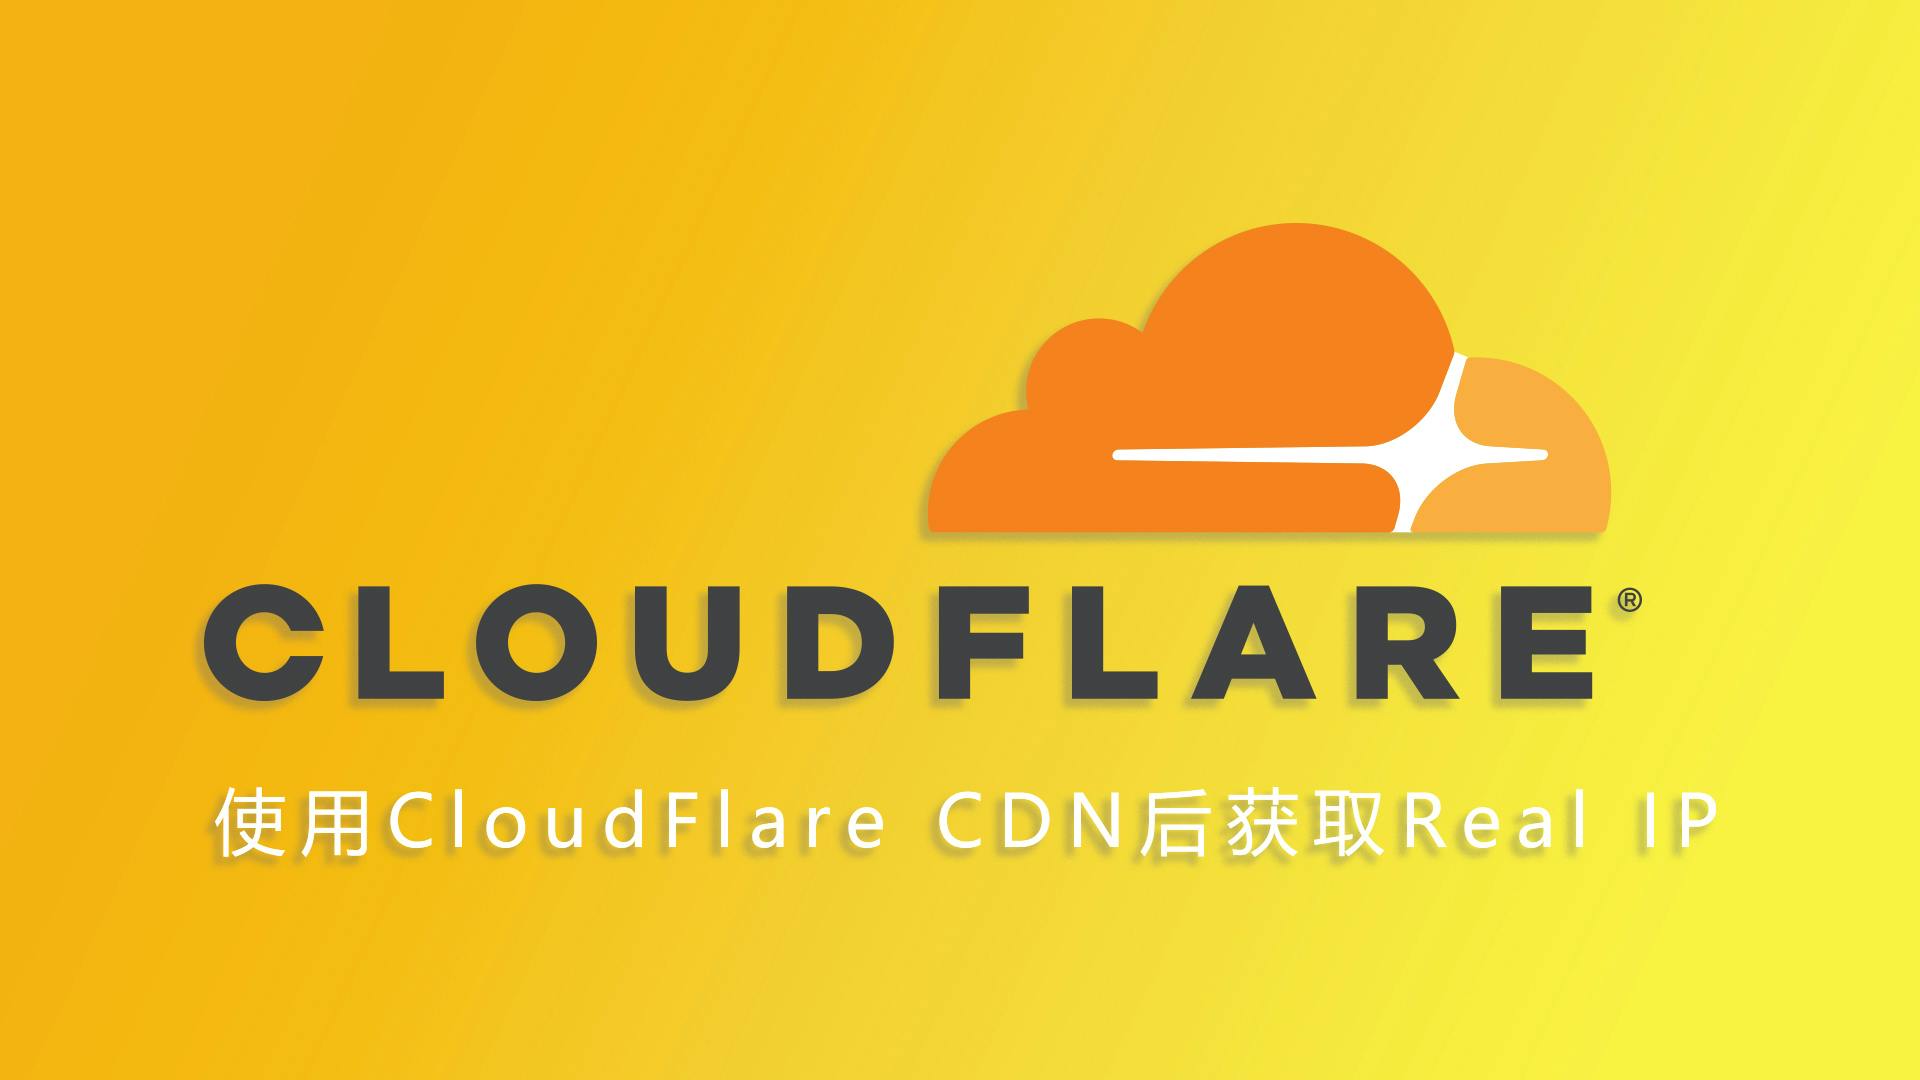 使用 CloudFlare CDN 后获取 Real IP